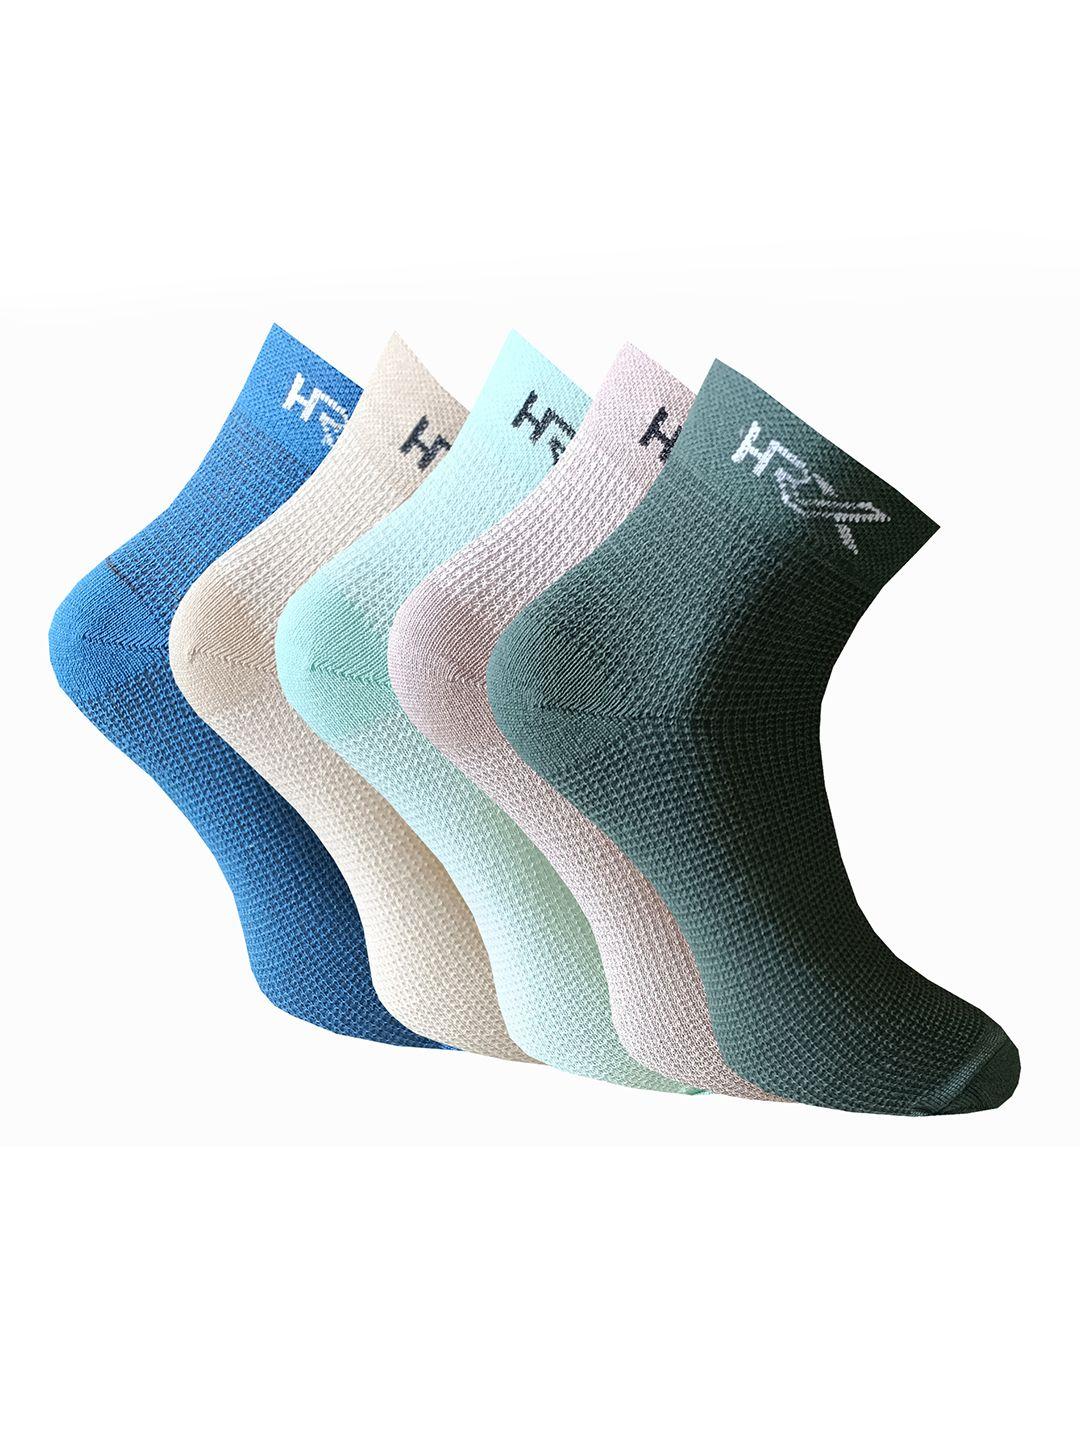 hrx by hrithik roshan men pack of 5 ankle-length socks